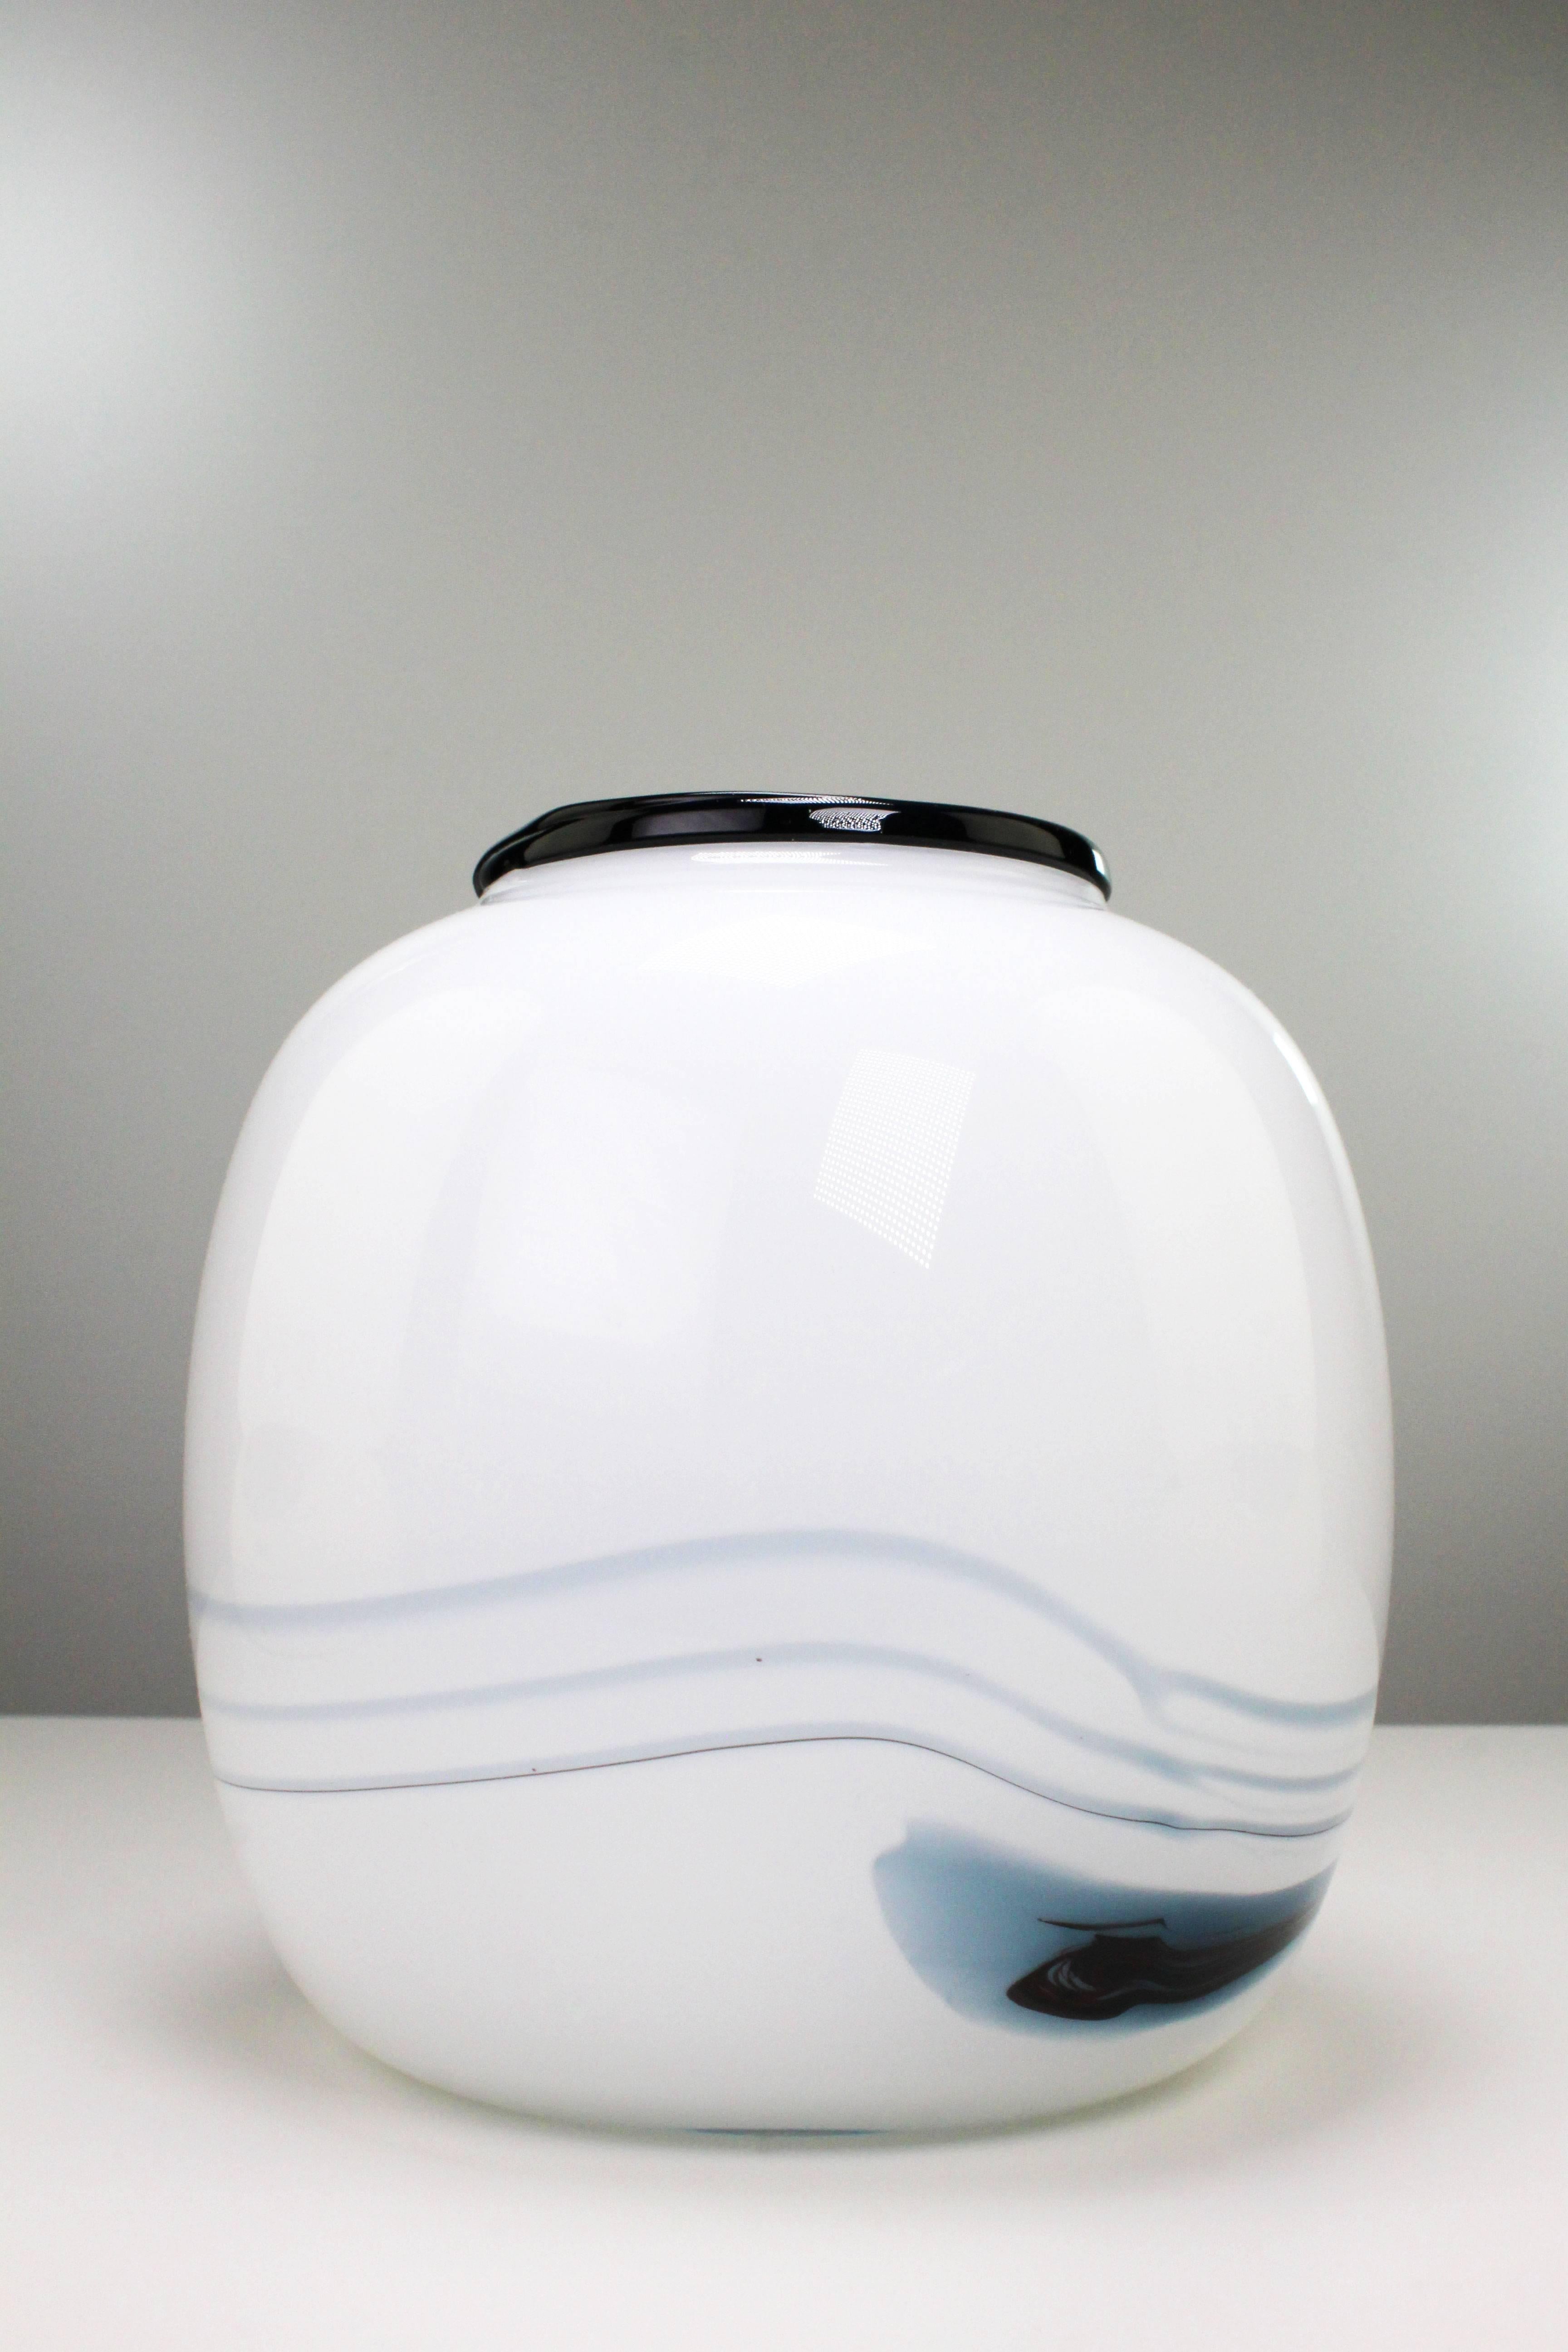 Dänische moderne glatte runde Vase mit rauchblauem und schwarzem Muster in milchig weißem Glas. Aus der Serie Atlantis des Kunstglasdesigners Michael Bang für das dänische Unternehmen Holmegaard. Schöner, unbenutzter Zustand. Hergestellt in der